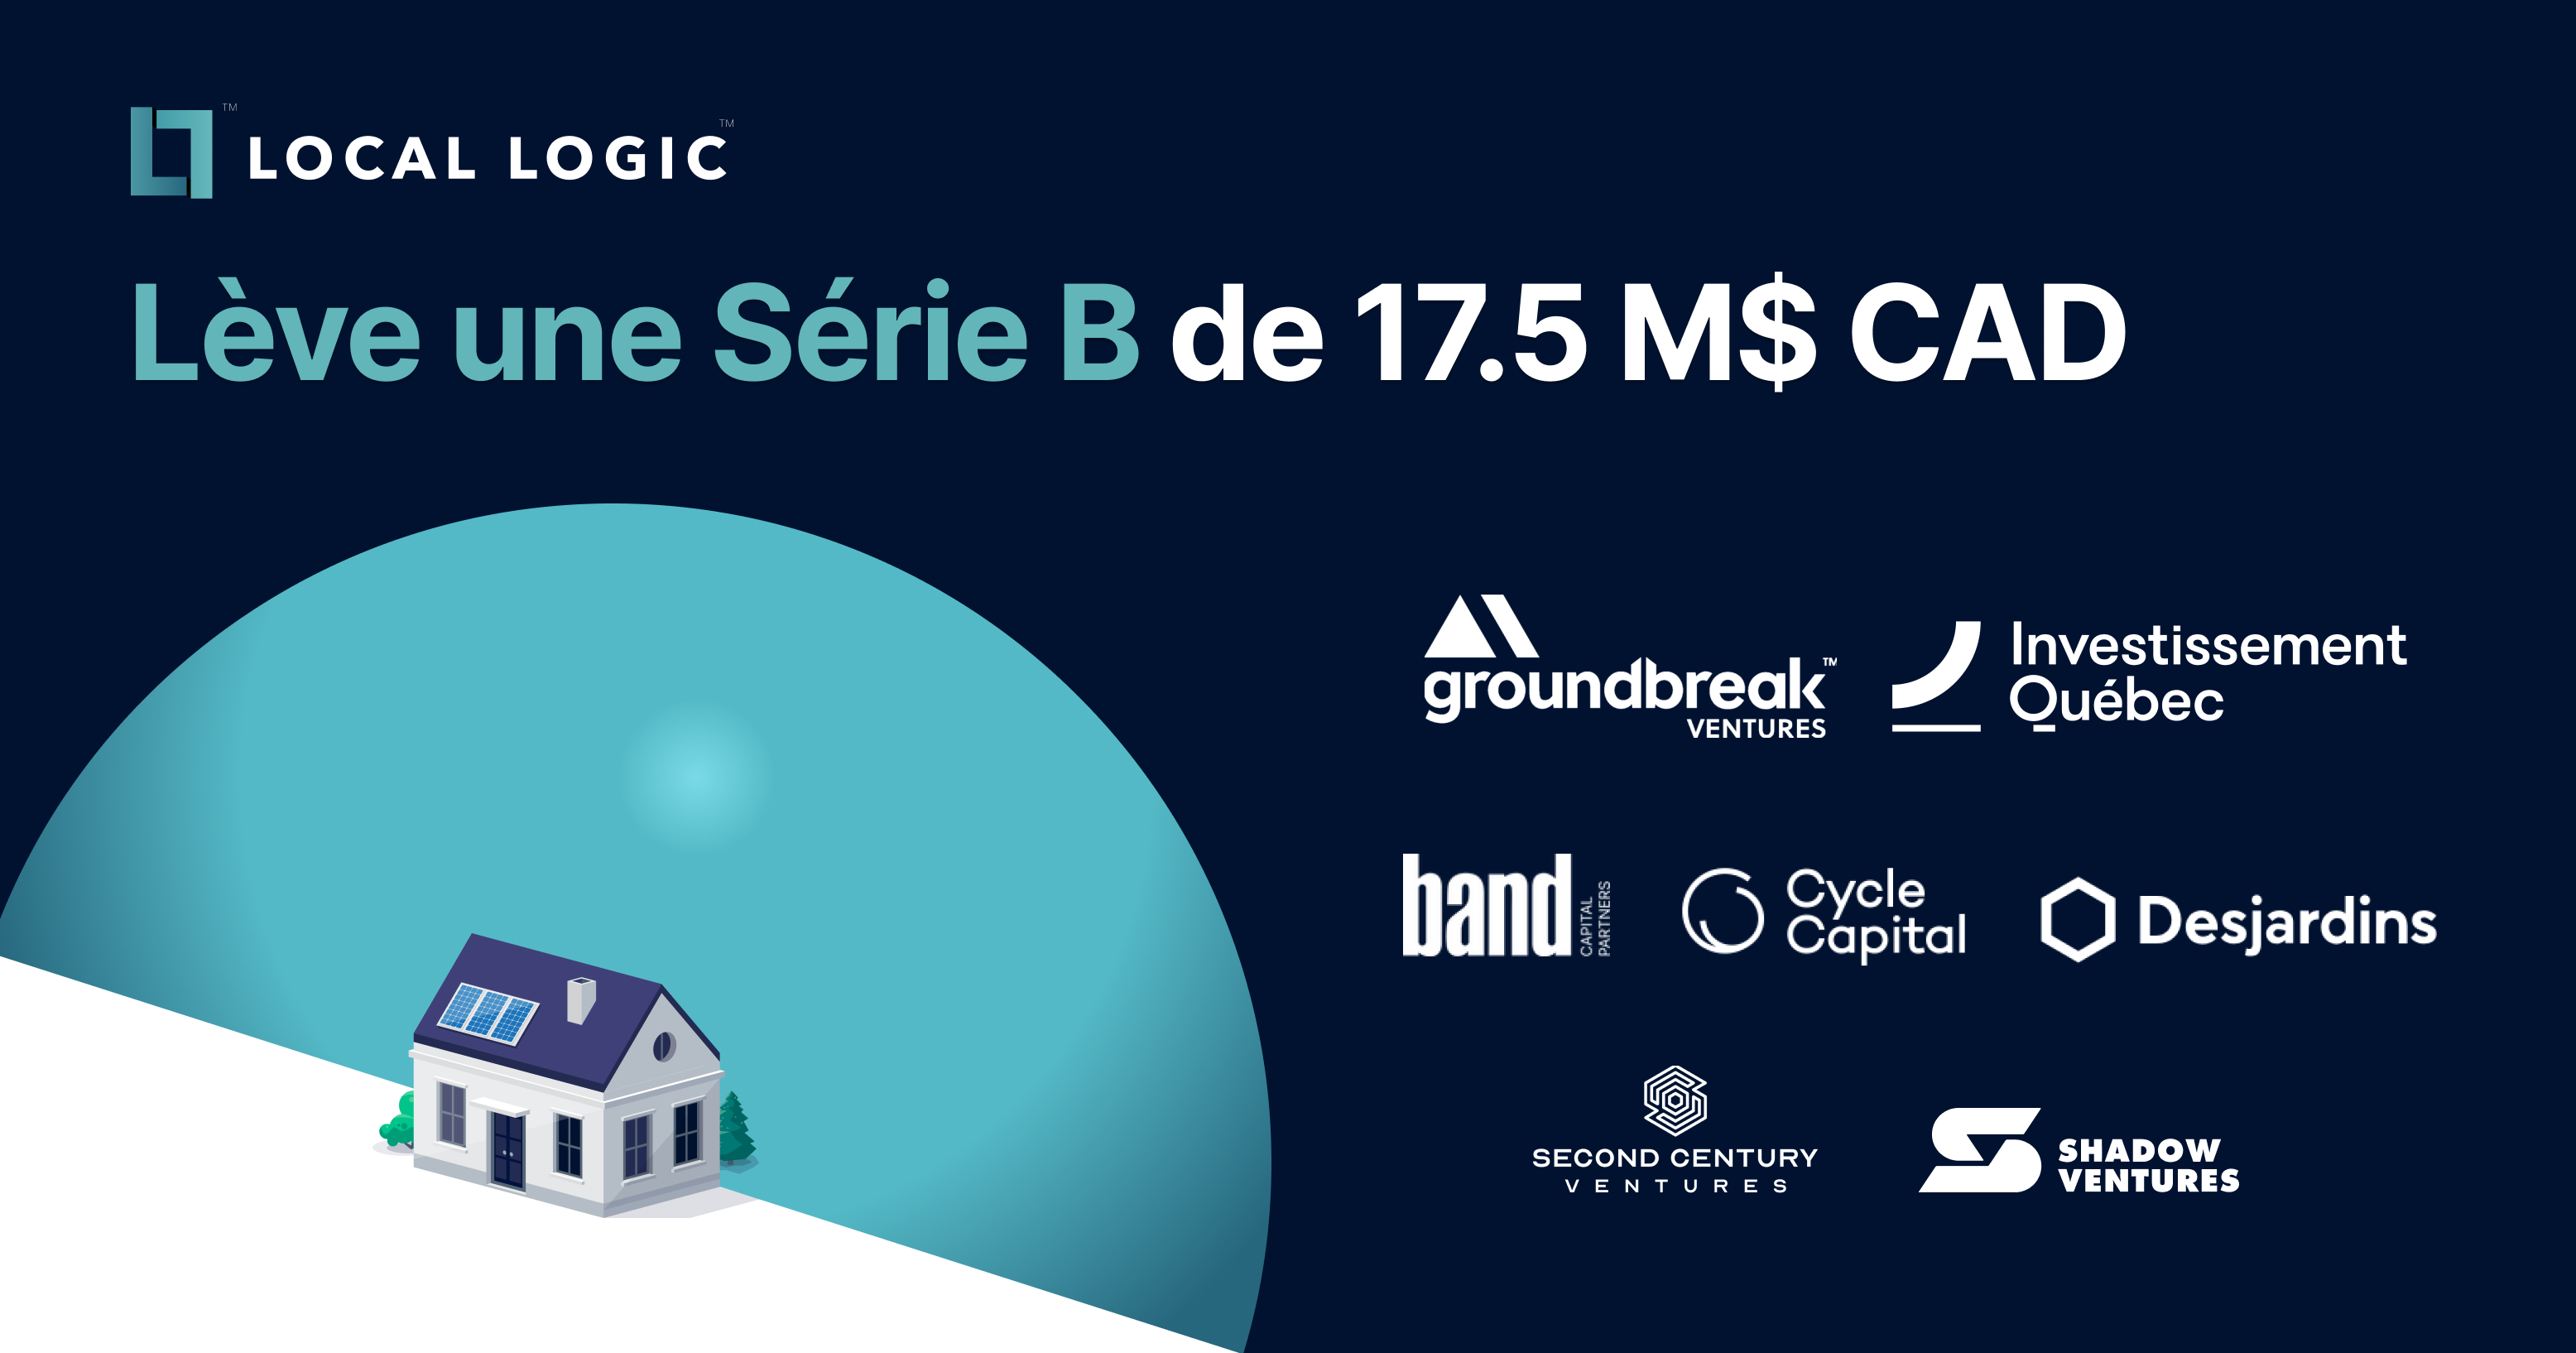 Graphique visuel promotionnel annonçant le financement de série B de Local Logic avec les logos des investisseurs (Groundbreak Ventures, Investissement Québec, Cycle Capital, Desjardins, Second Century Ventures et Shadow Ventures)